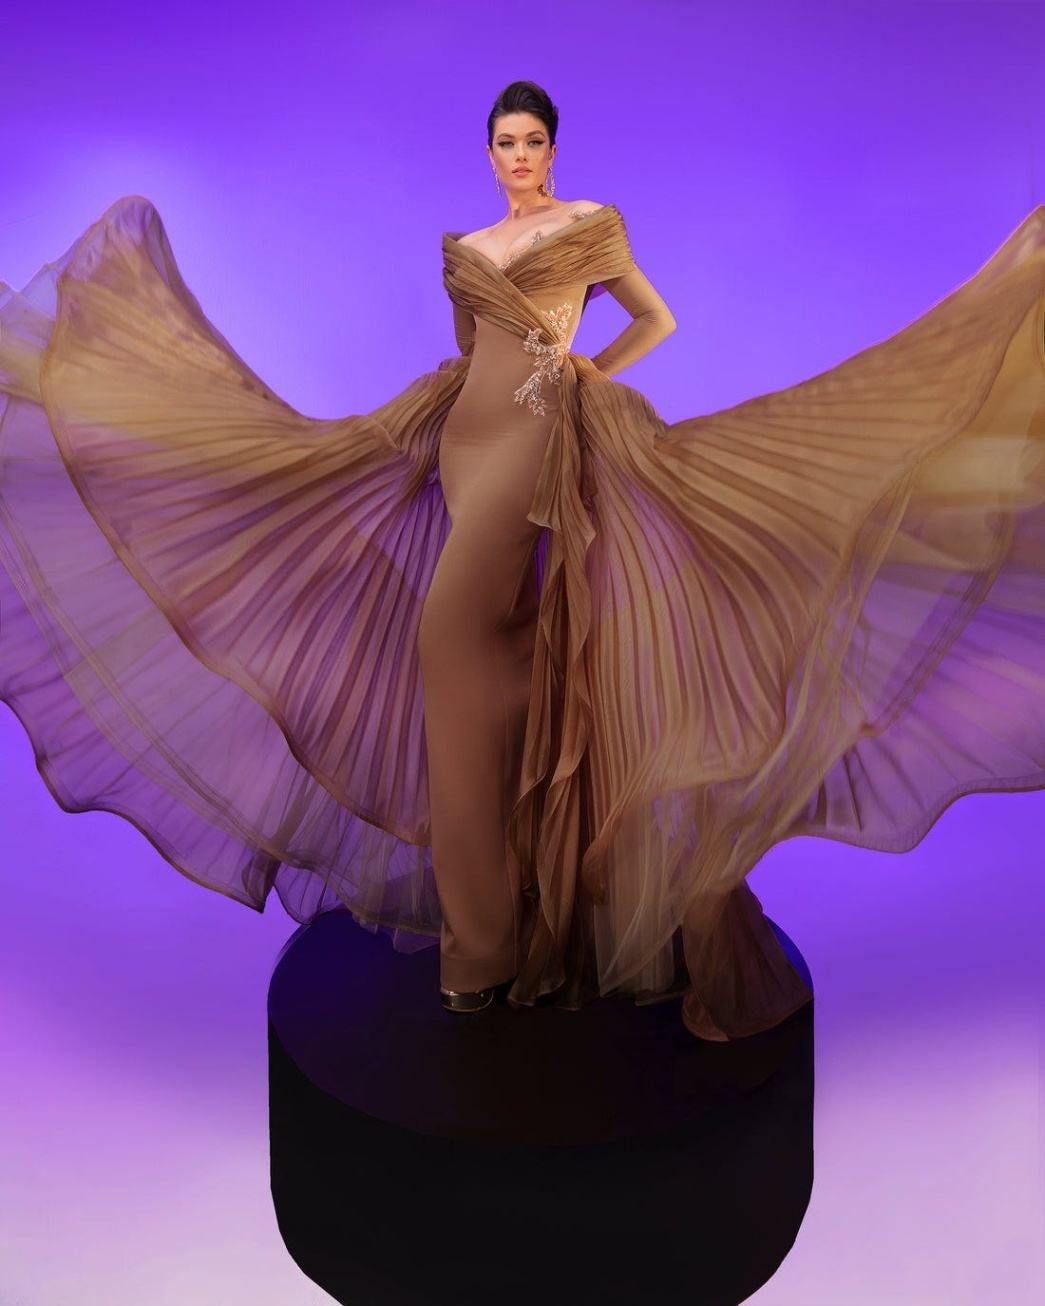 affordable designer dresses Bulan 4 Affordable Designer Dresses That Wow  by Fouad Sarkis  Medium